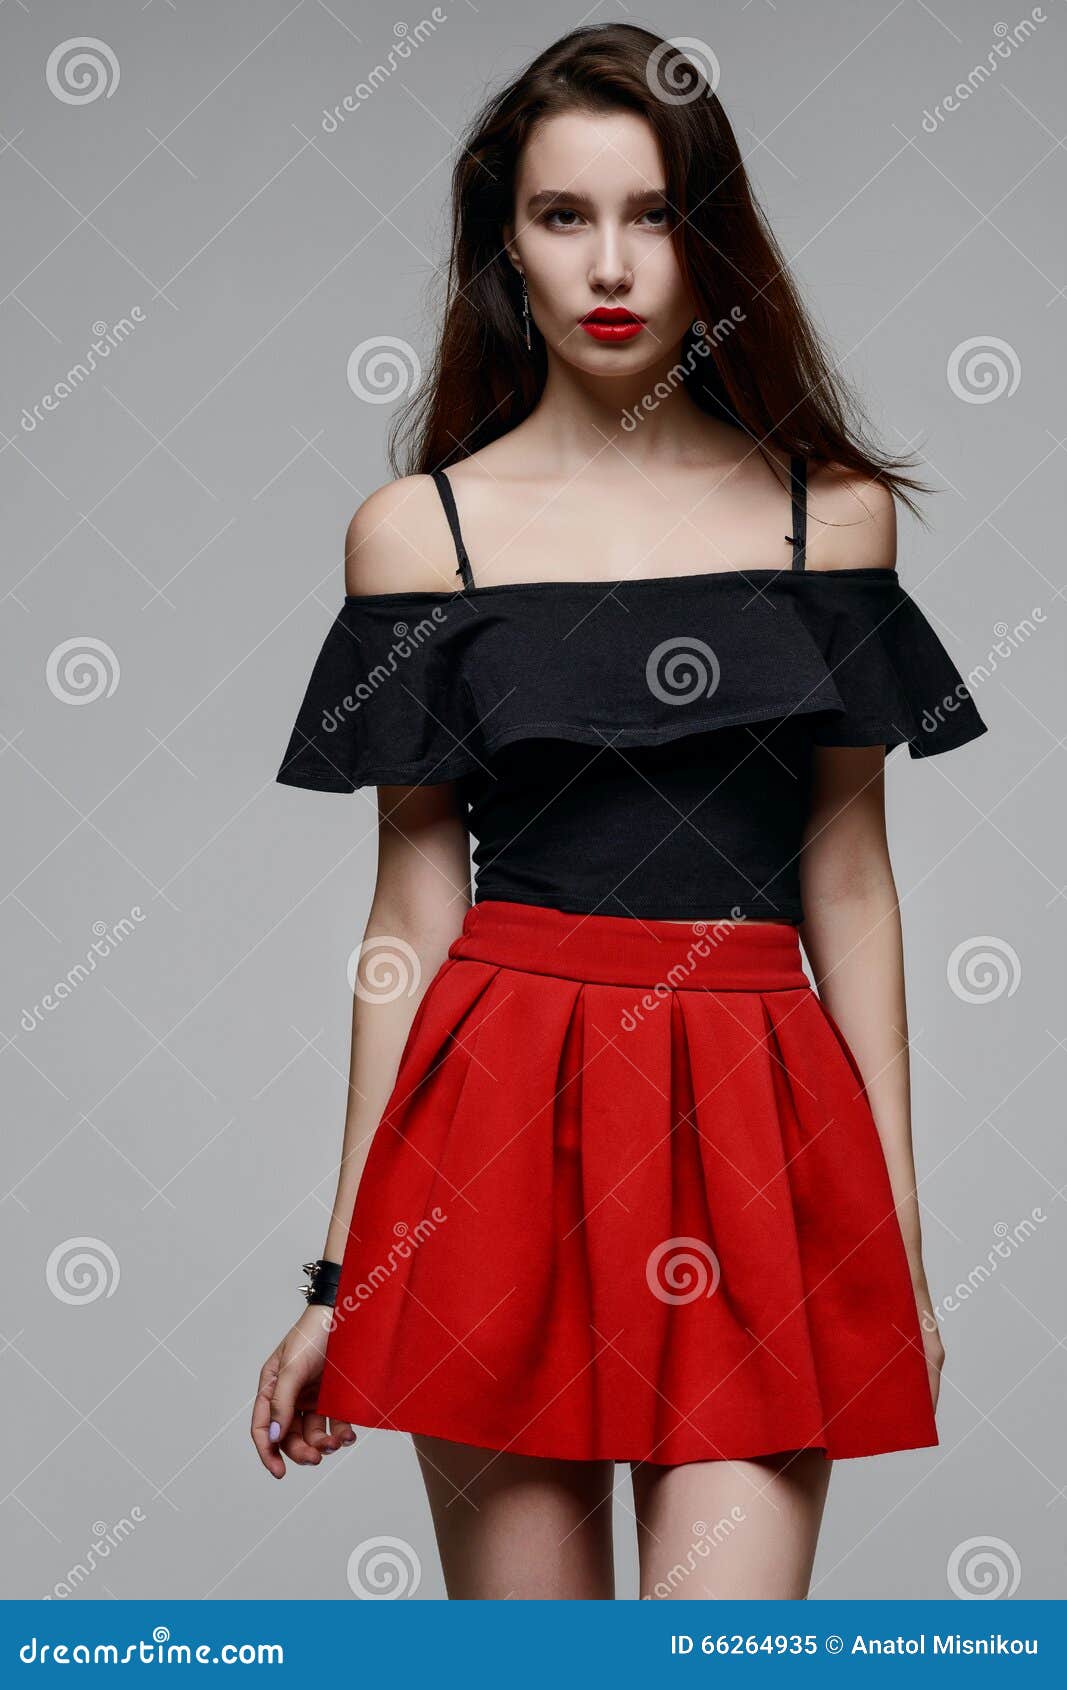 Muchacha Hermosa En Una Blusa Negra Y Una Roja Imagen de archivo - Imagen de estallido, 66264935